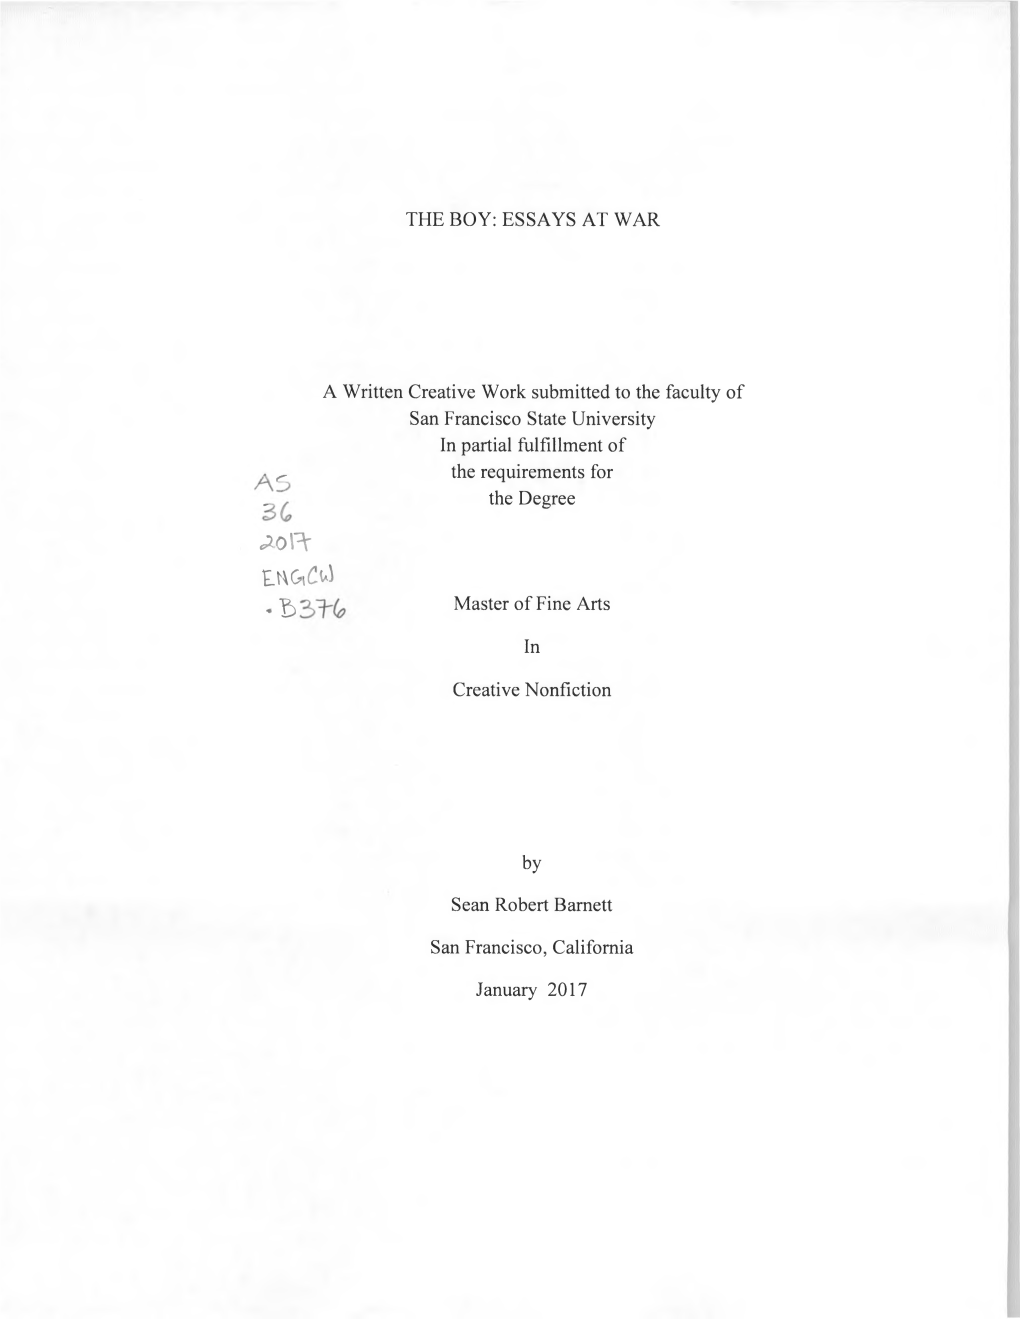 The Boy: Essays at War